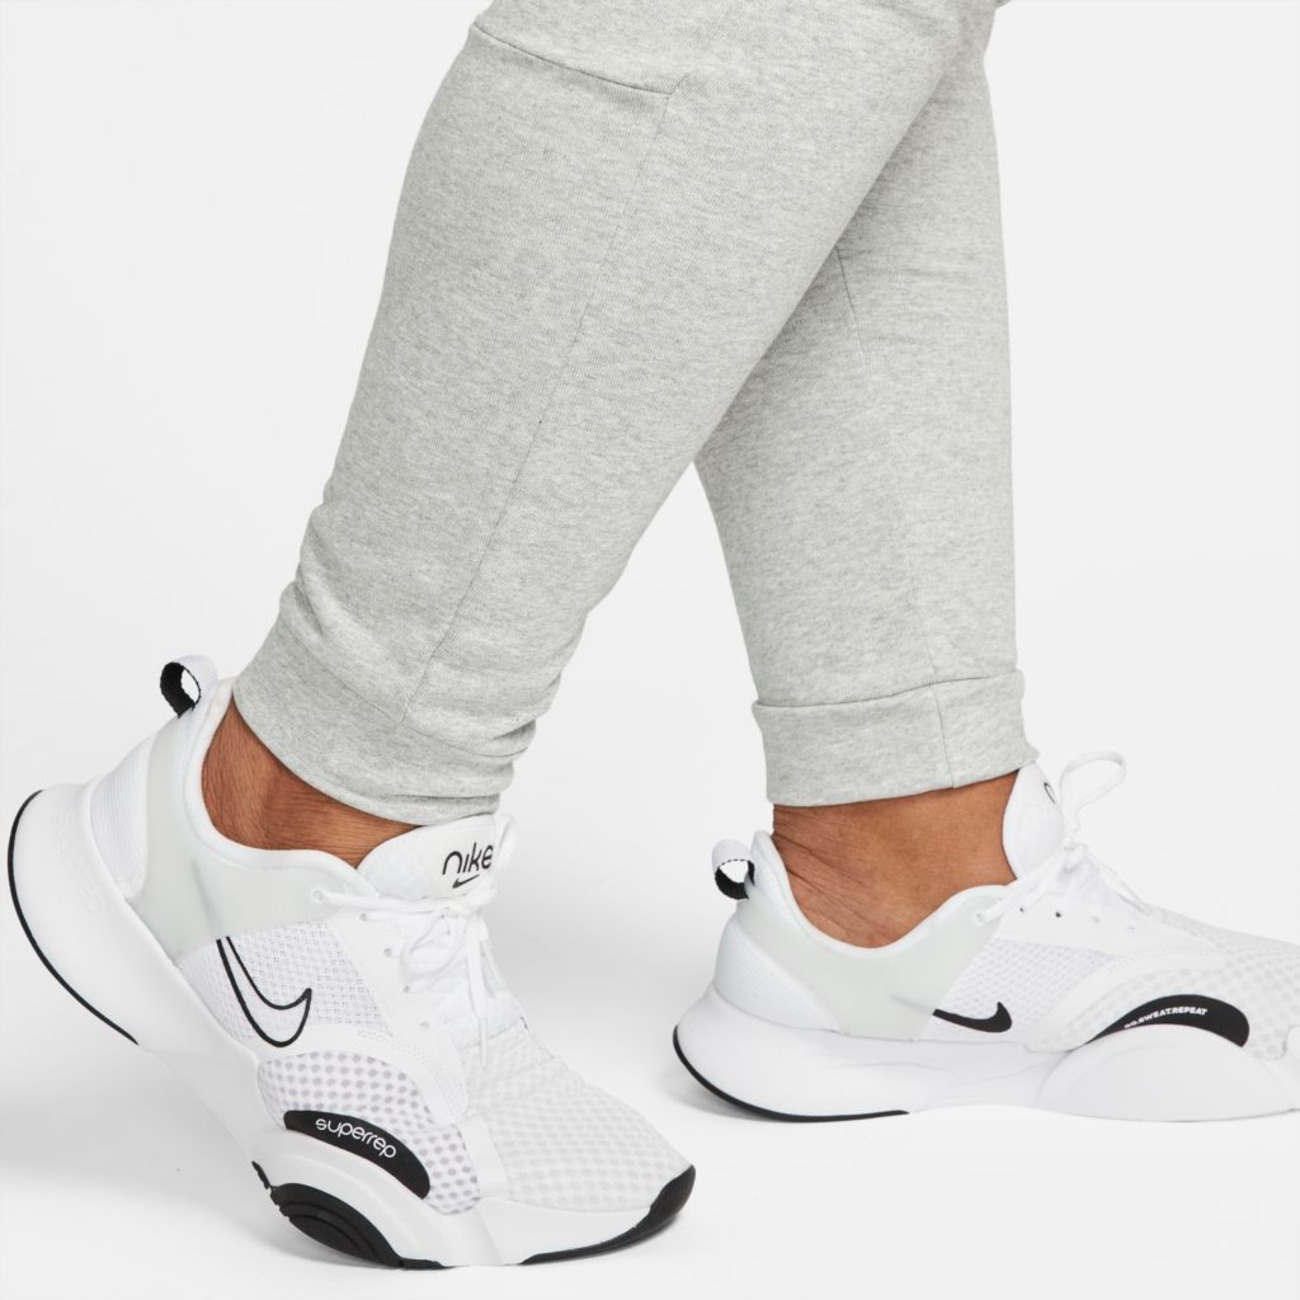 Calça Nike Dri-FIT Masculina - Foto 15